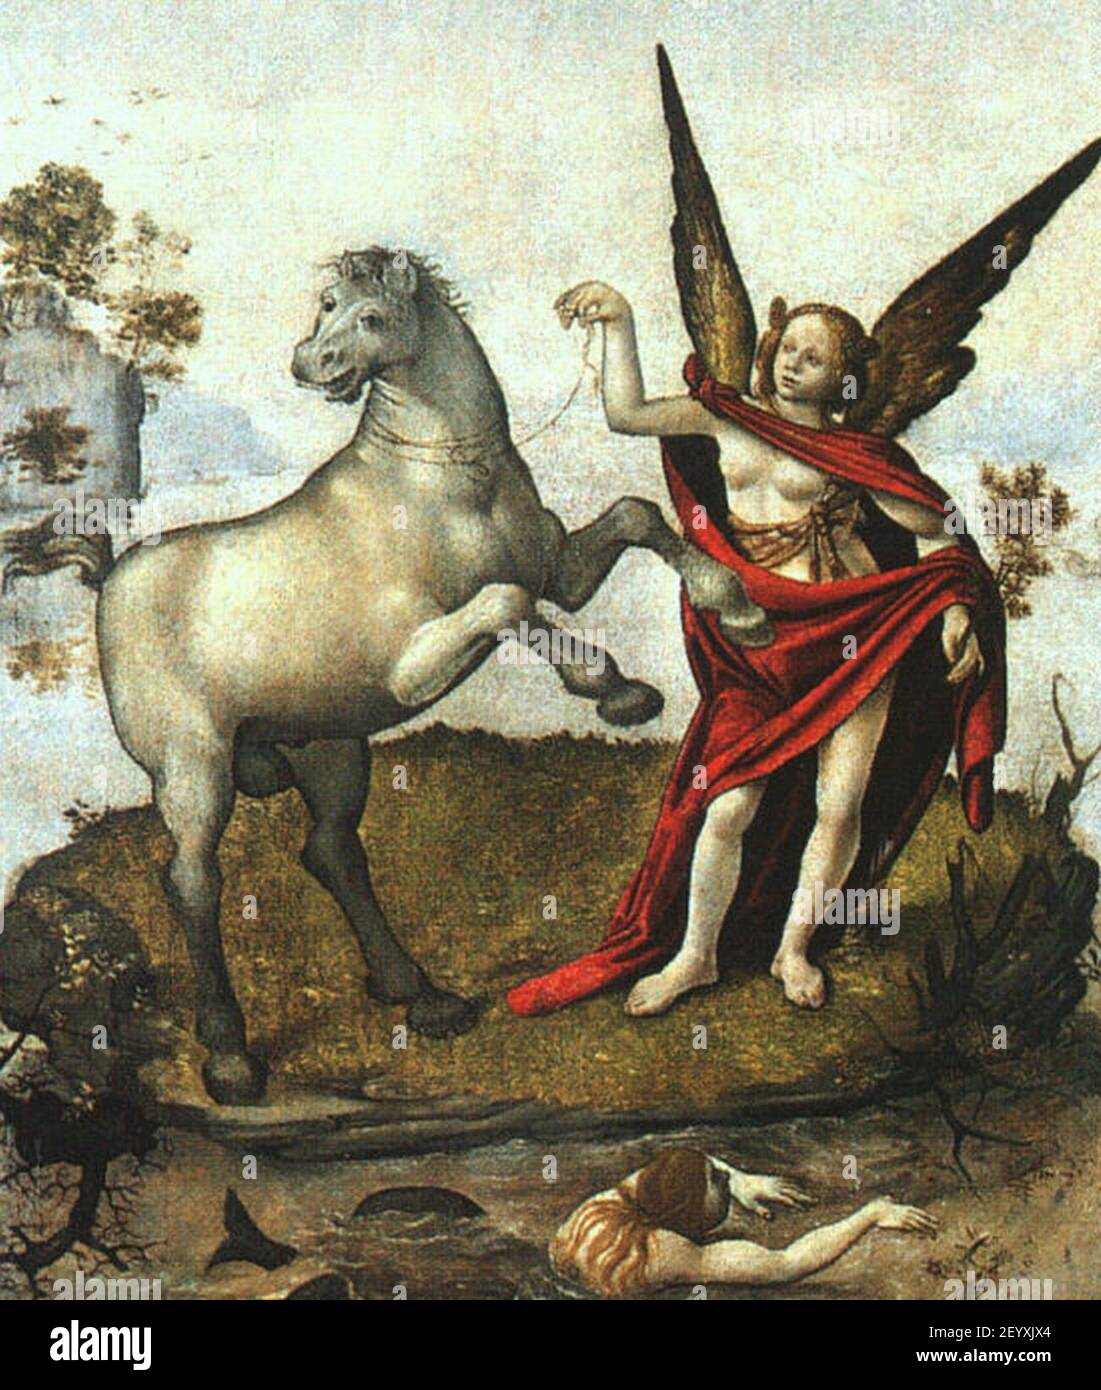 Piero di cosimo, allegoria. Stock Photo